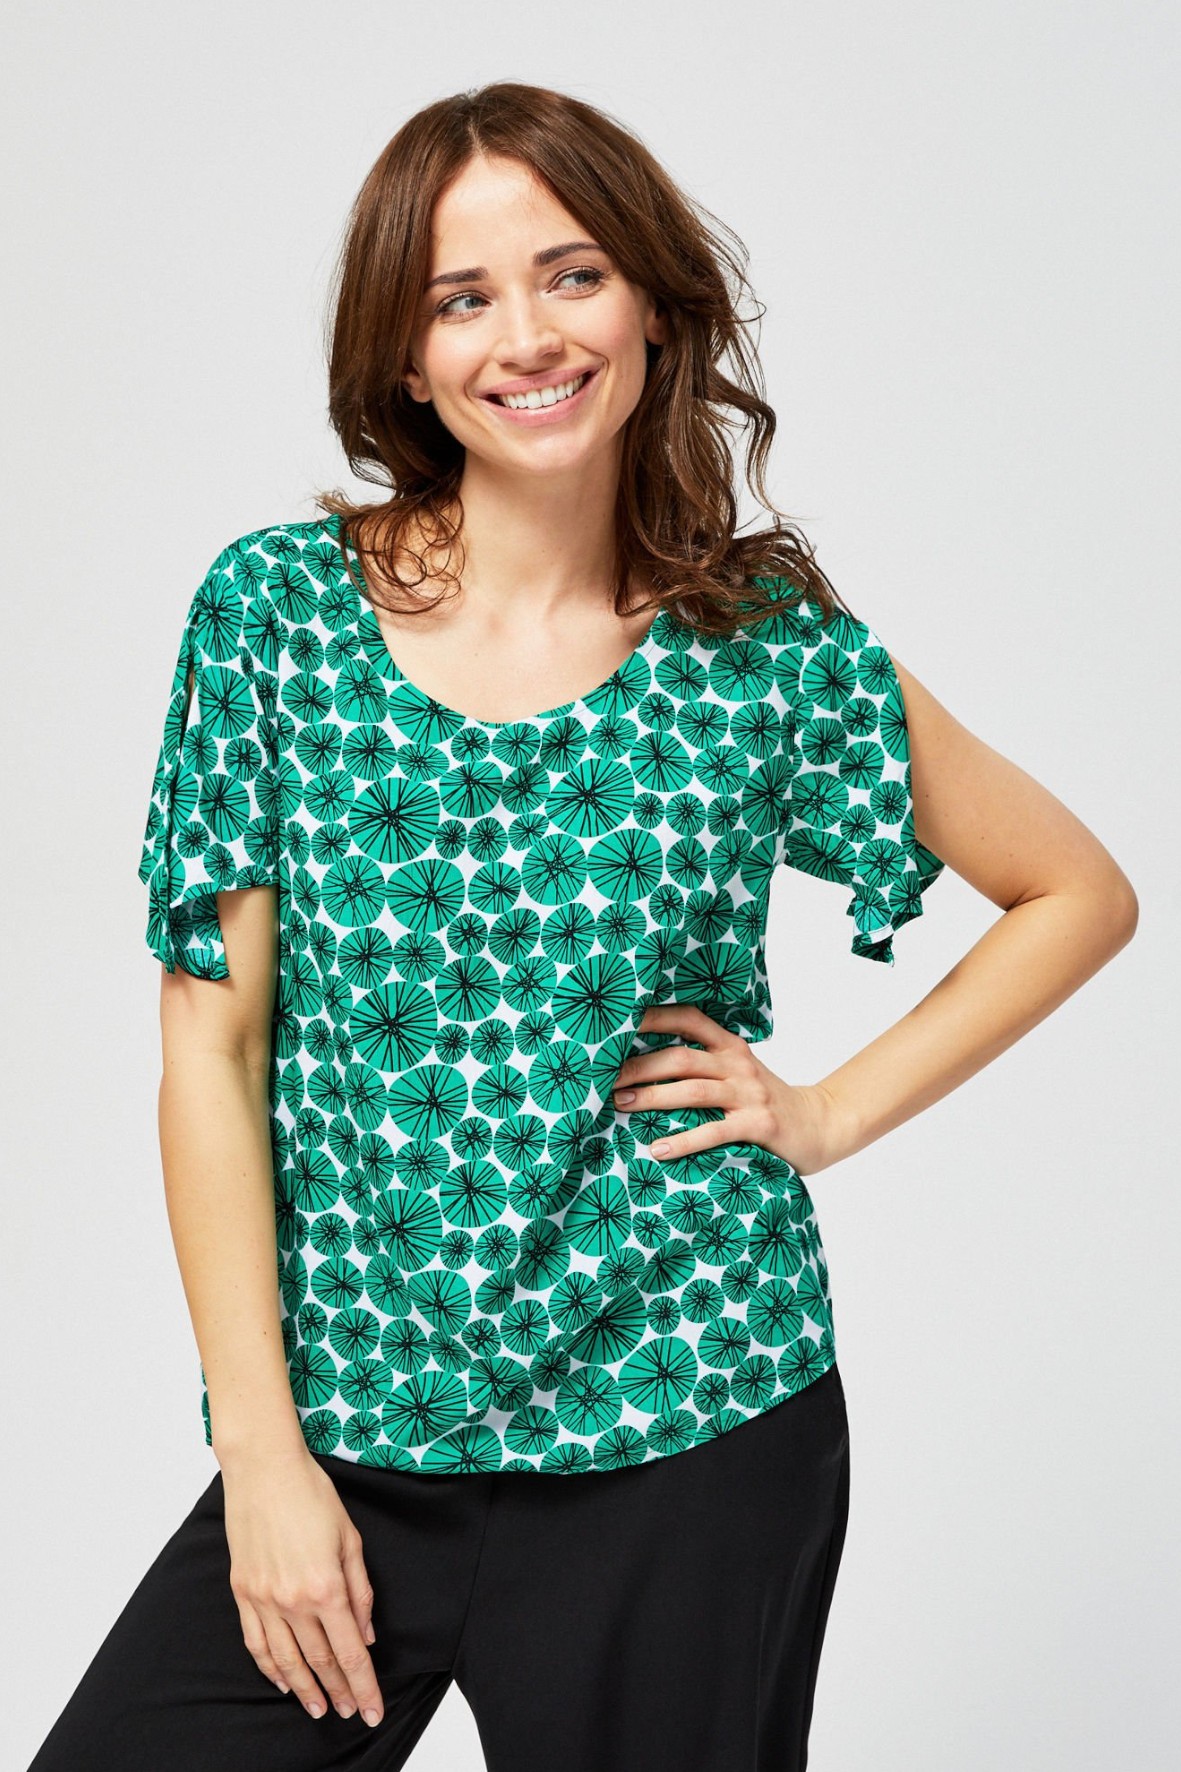 Bluzka damska koszulowa z rozcięciami przy rękawach zielona